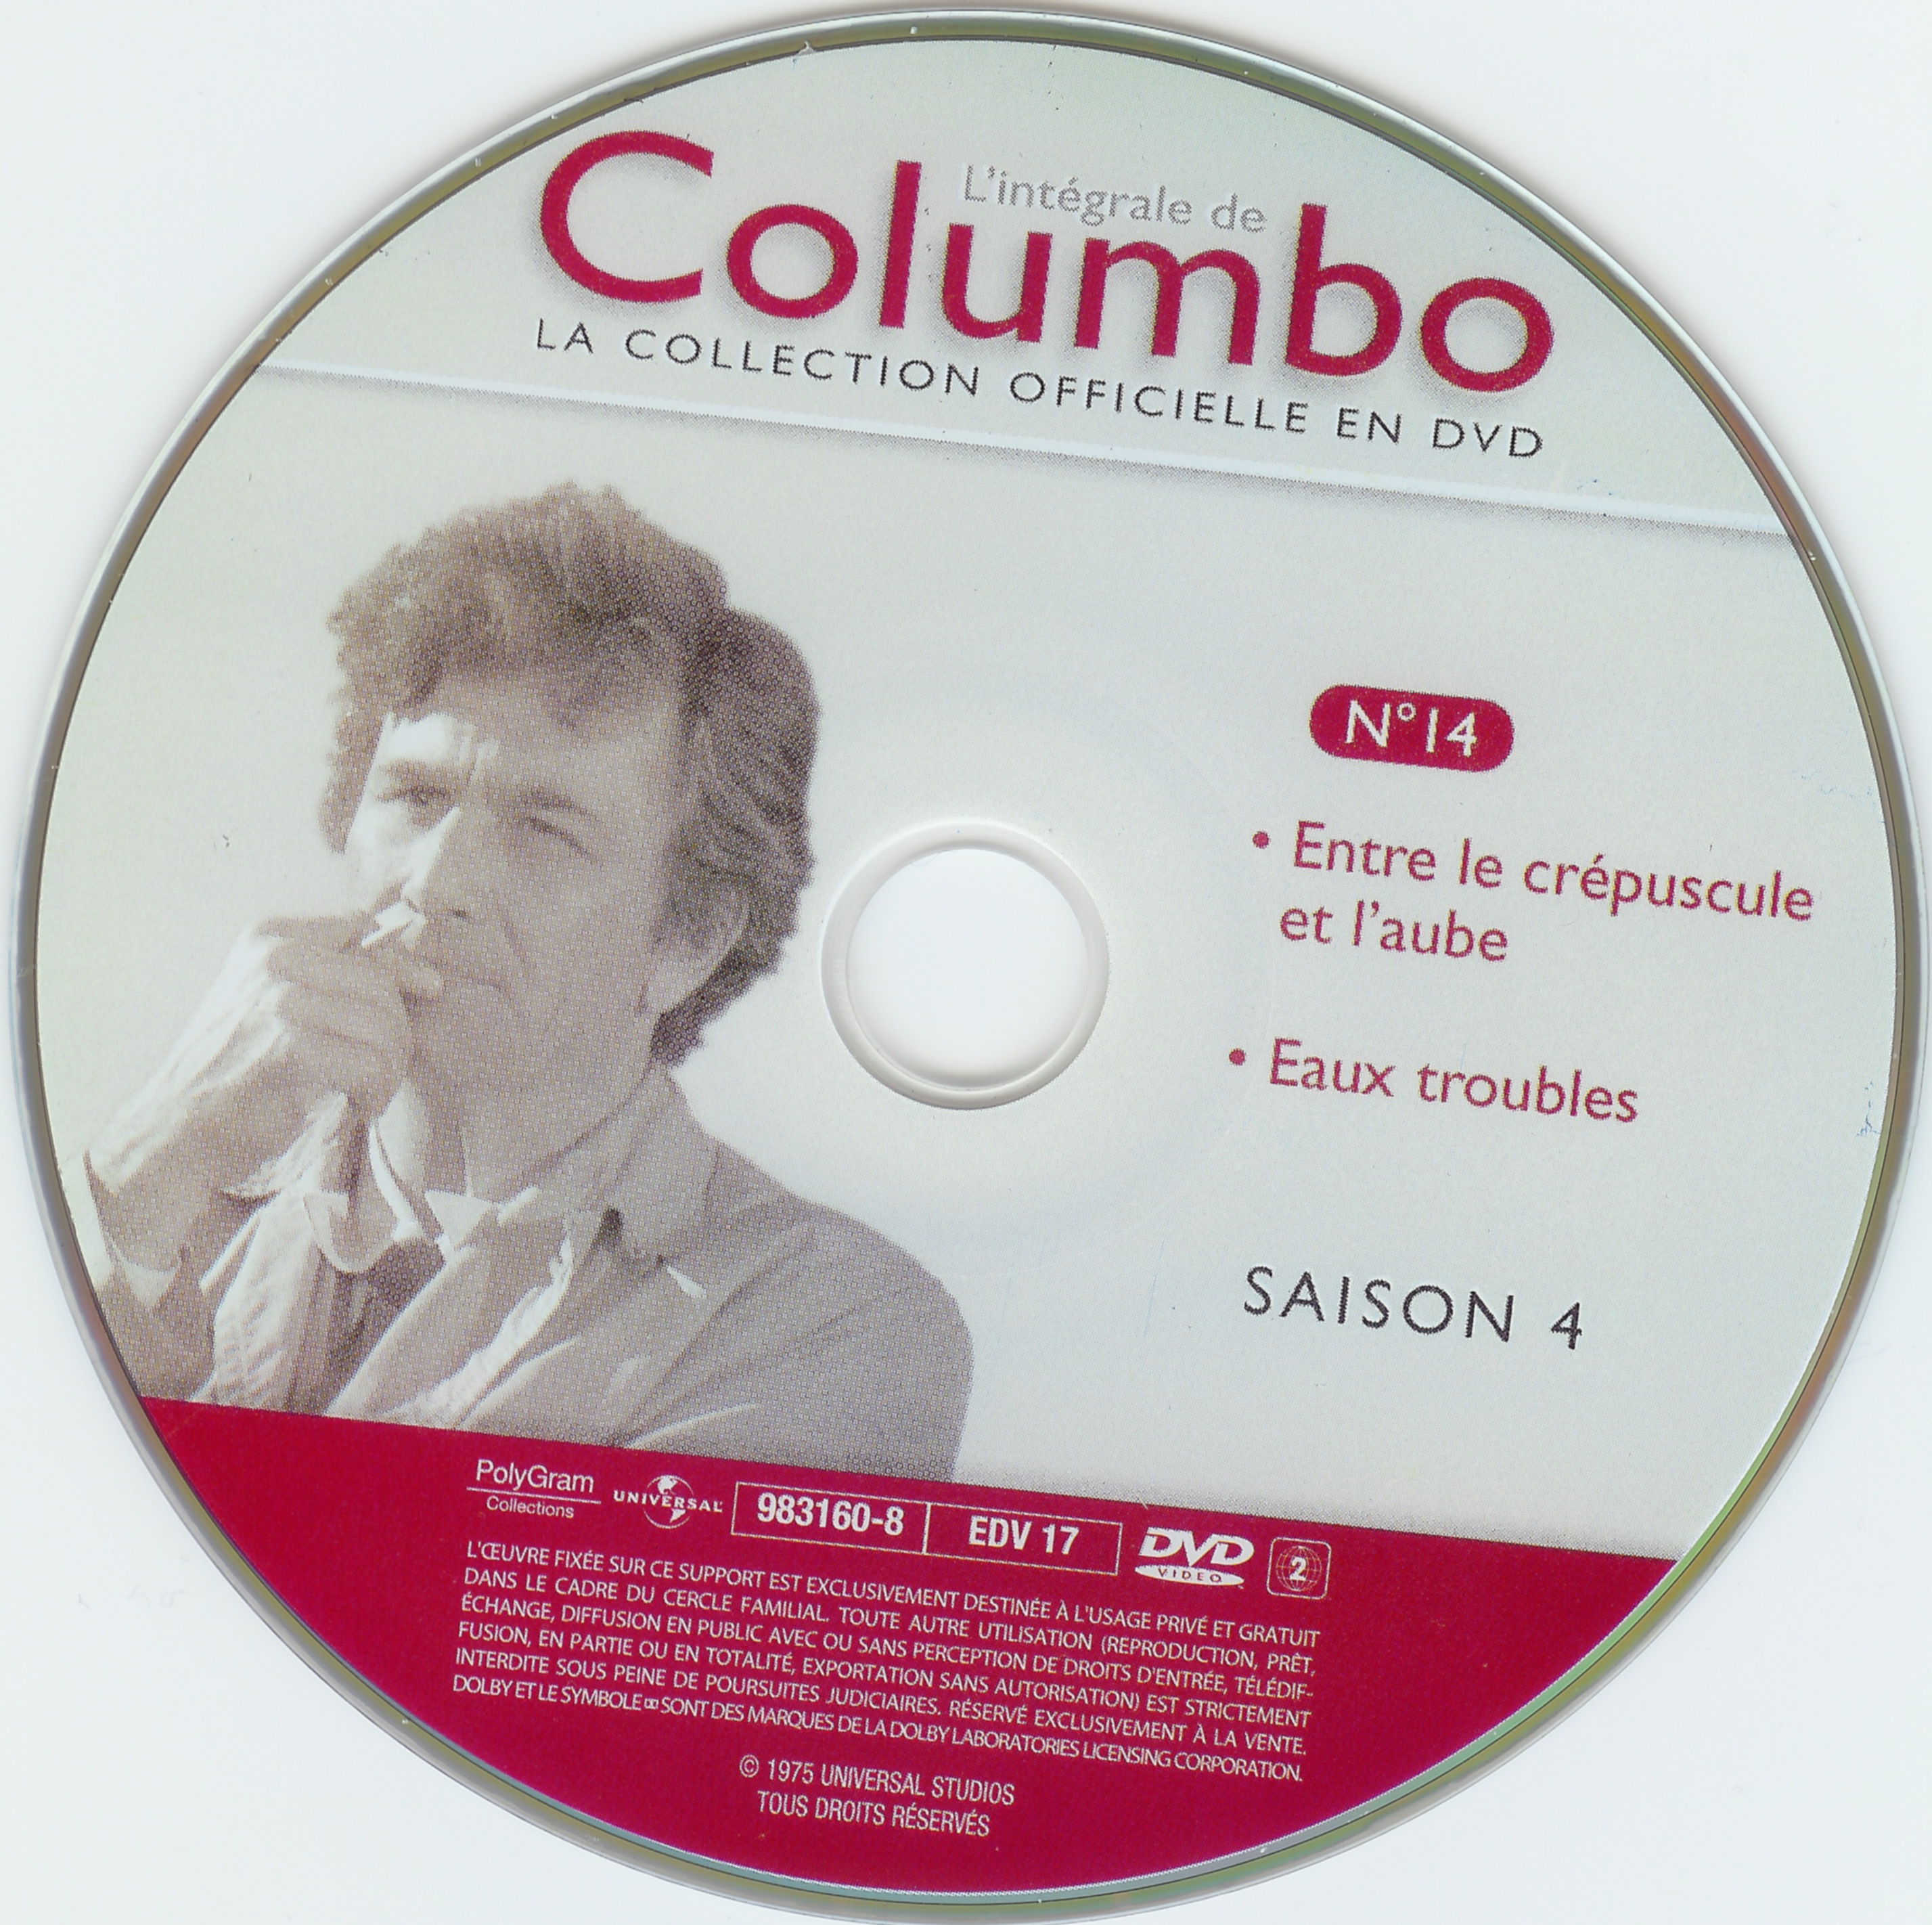 Columbo saison 4 vol 14